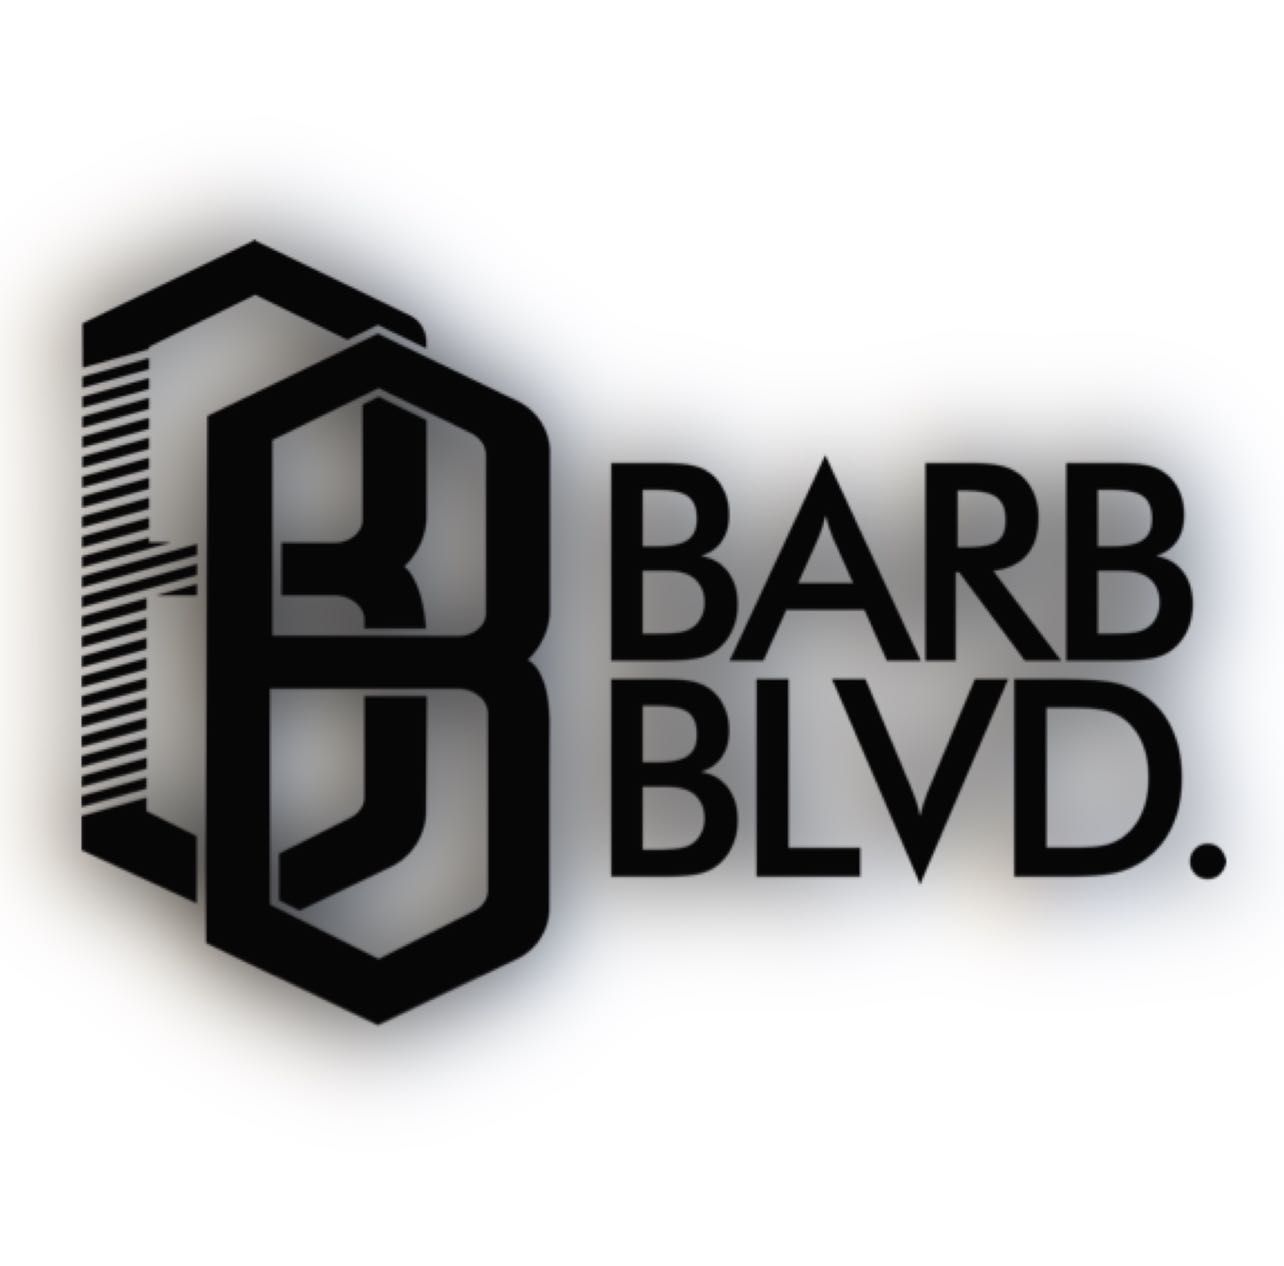 BarbBlvd, Boulevard Benton No. 6, 22105, Tijuana